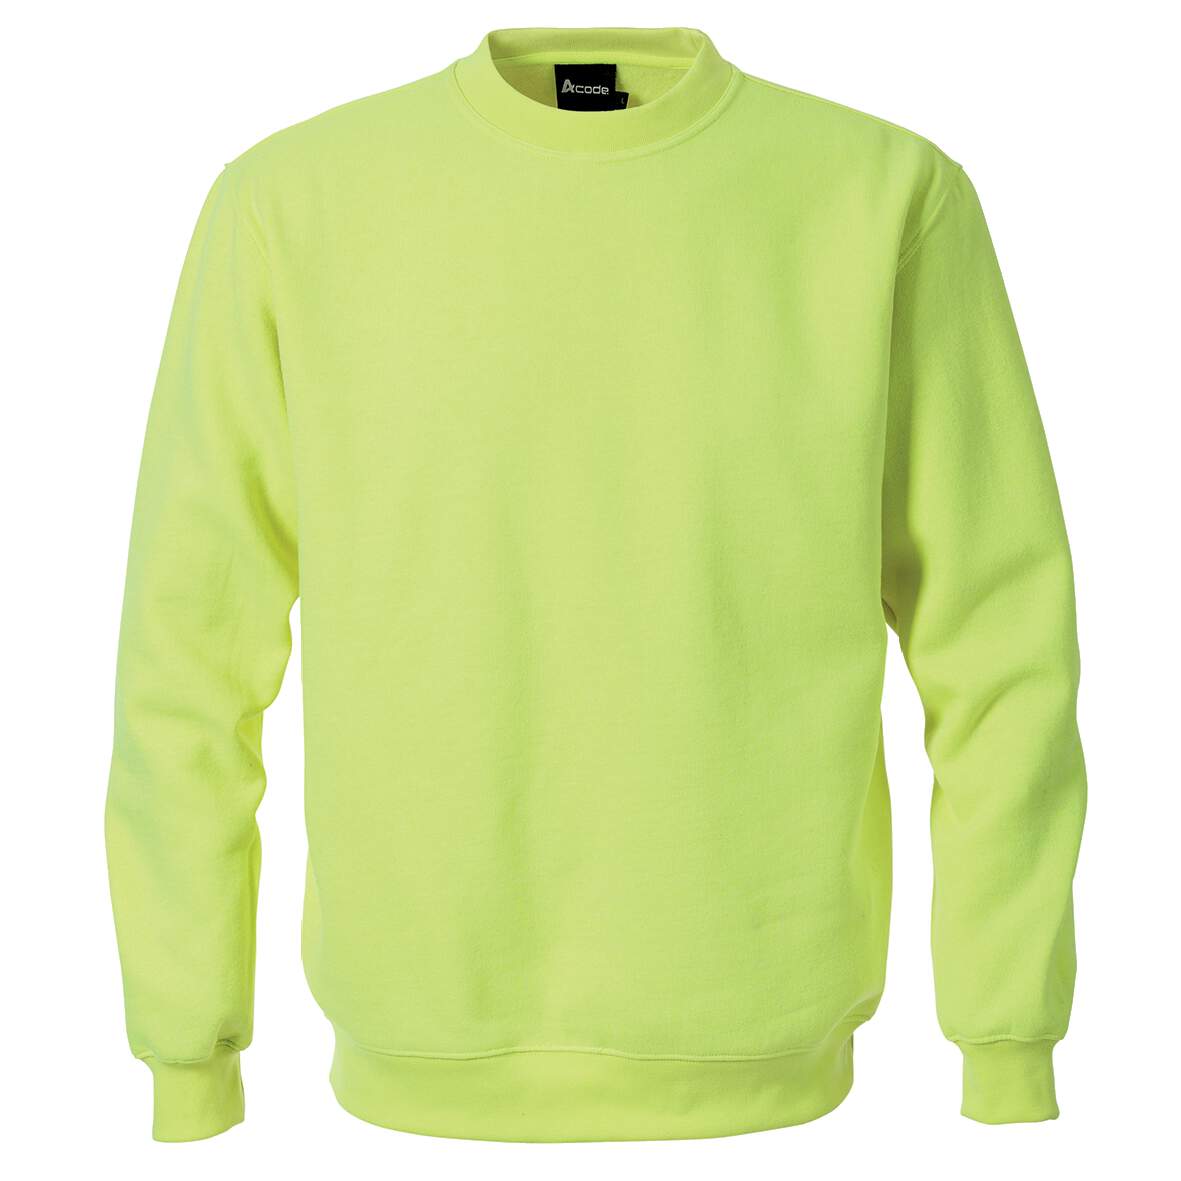 1258265 - Sweatshirt gelb Gr.S 100225